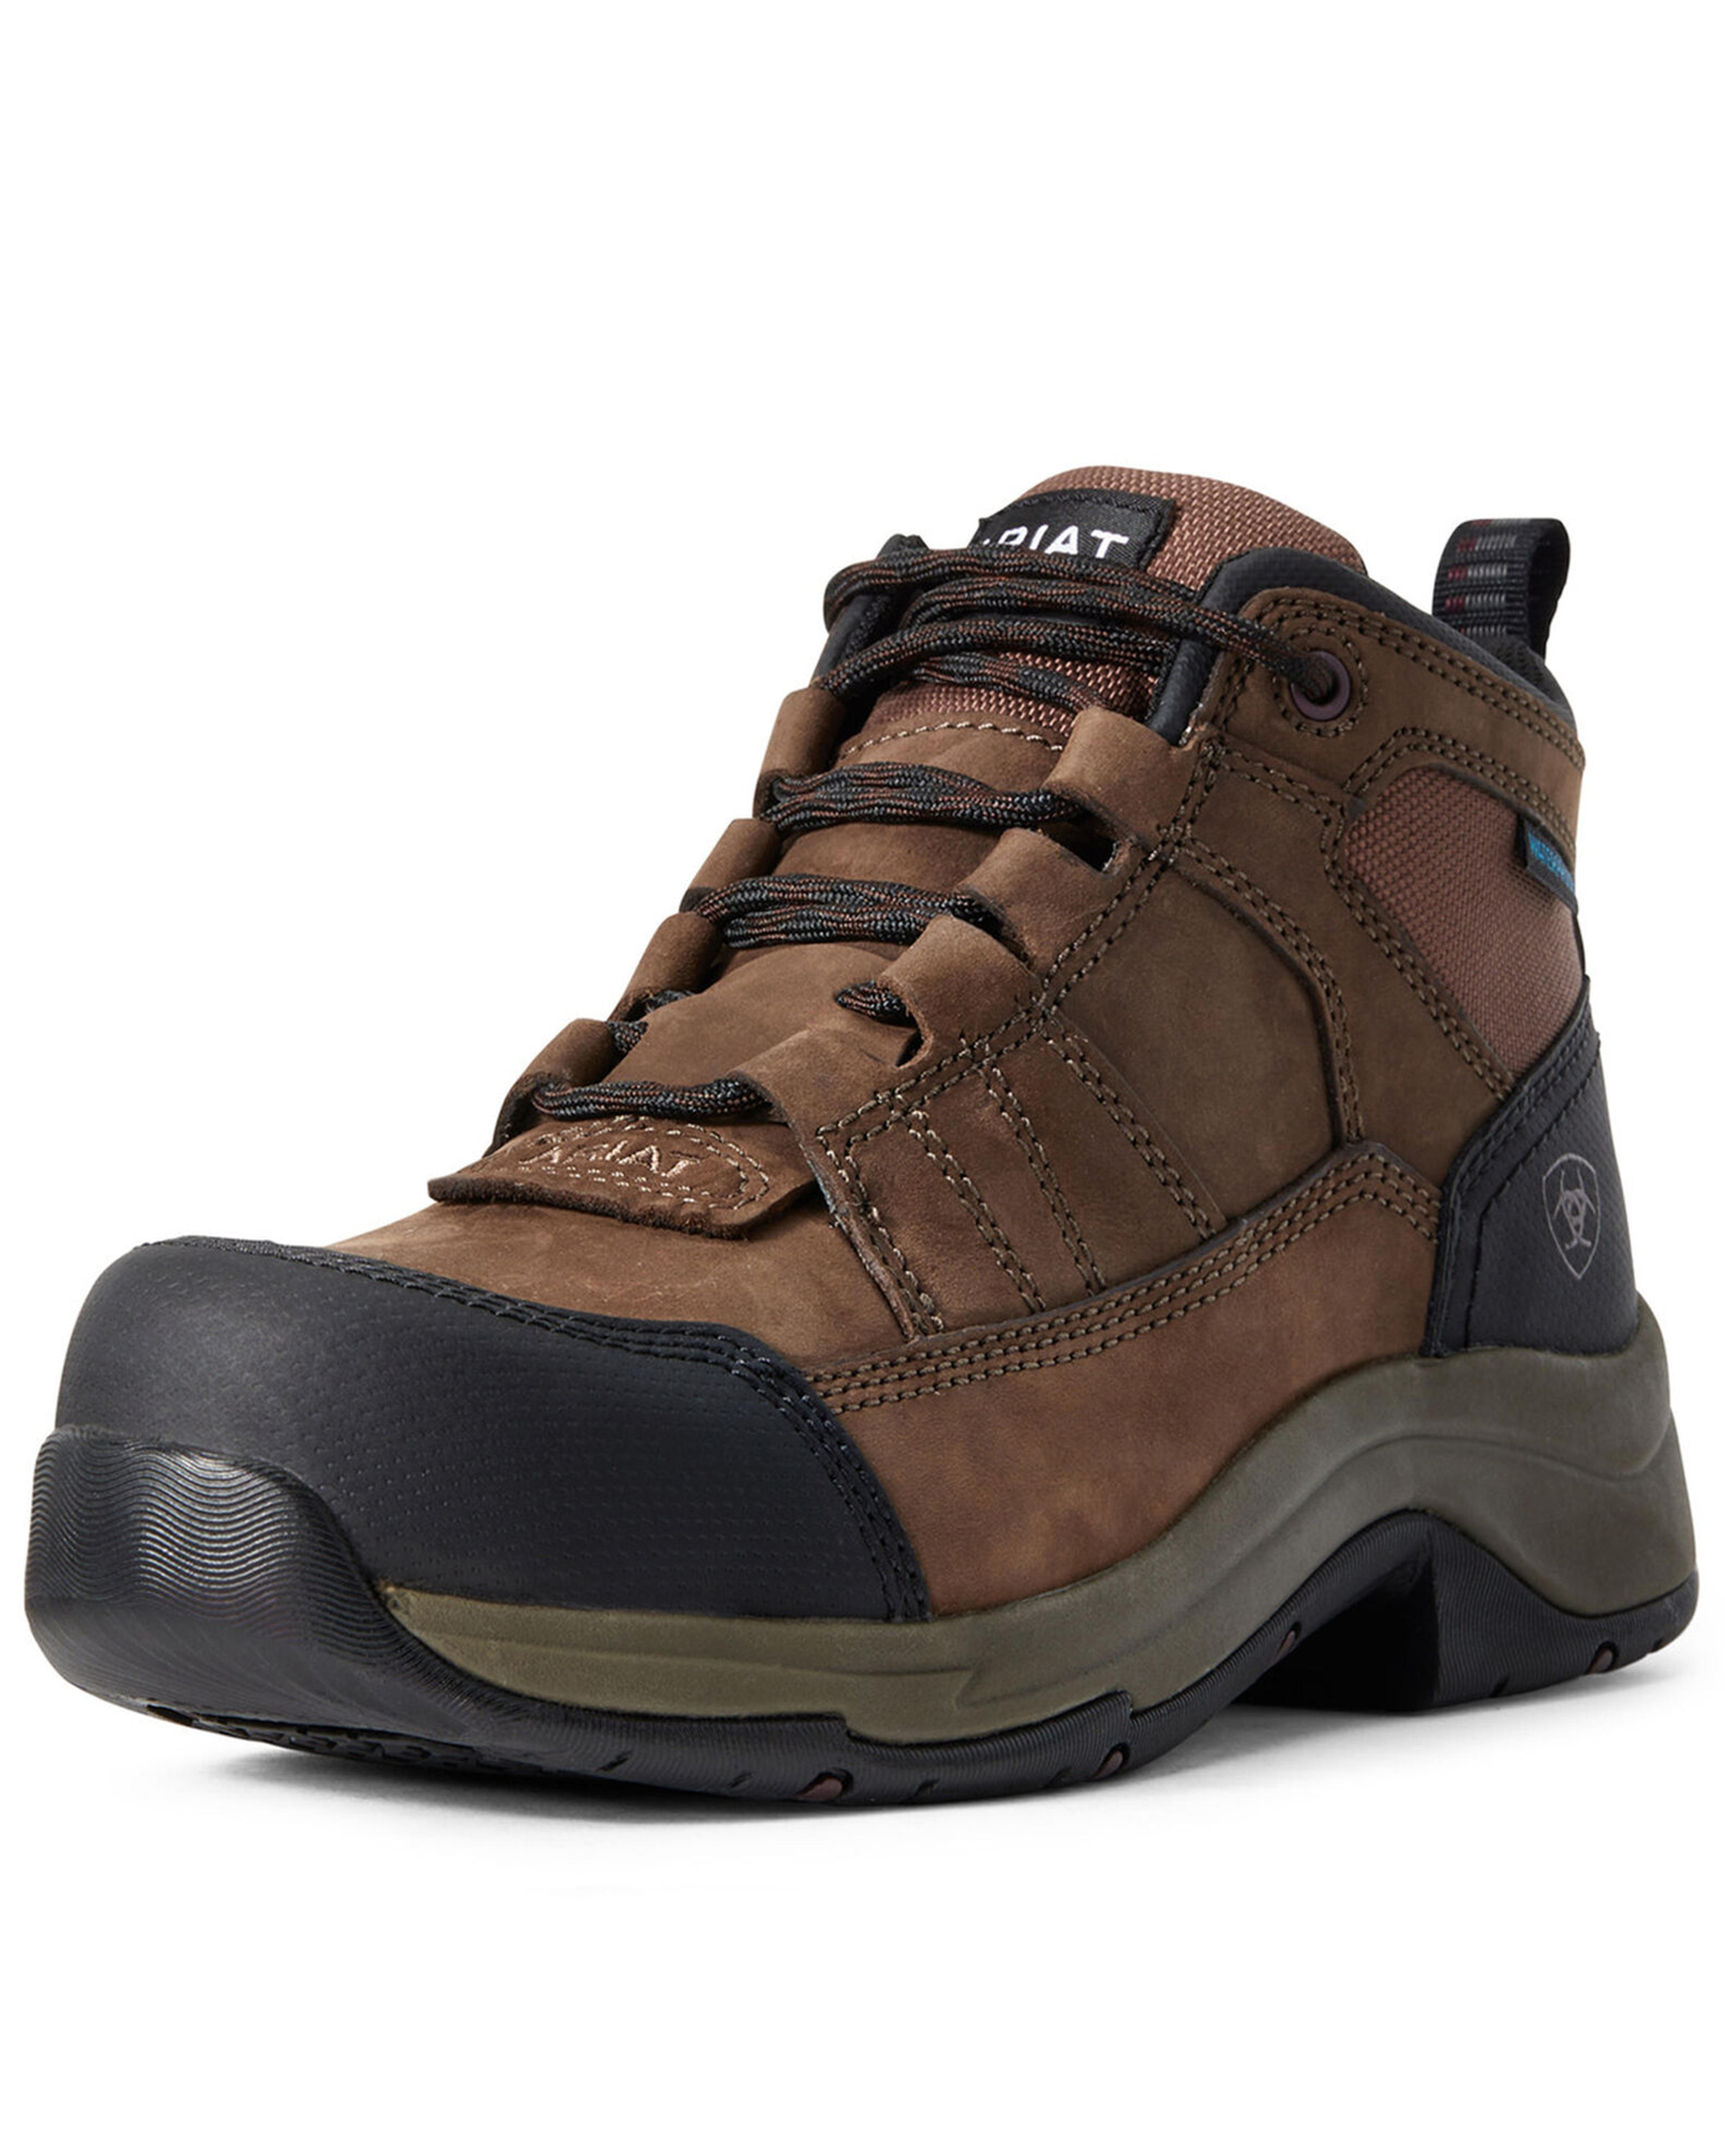 Ariat Women's Telluride Waterproof Work Boots - Composite Toe | Boot Barn